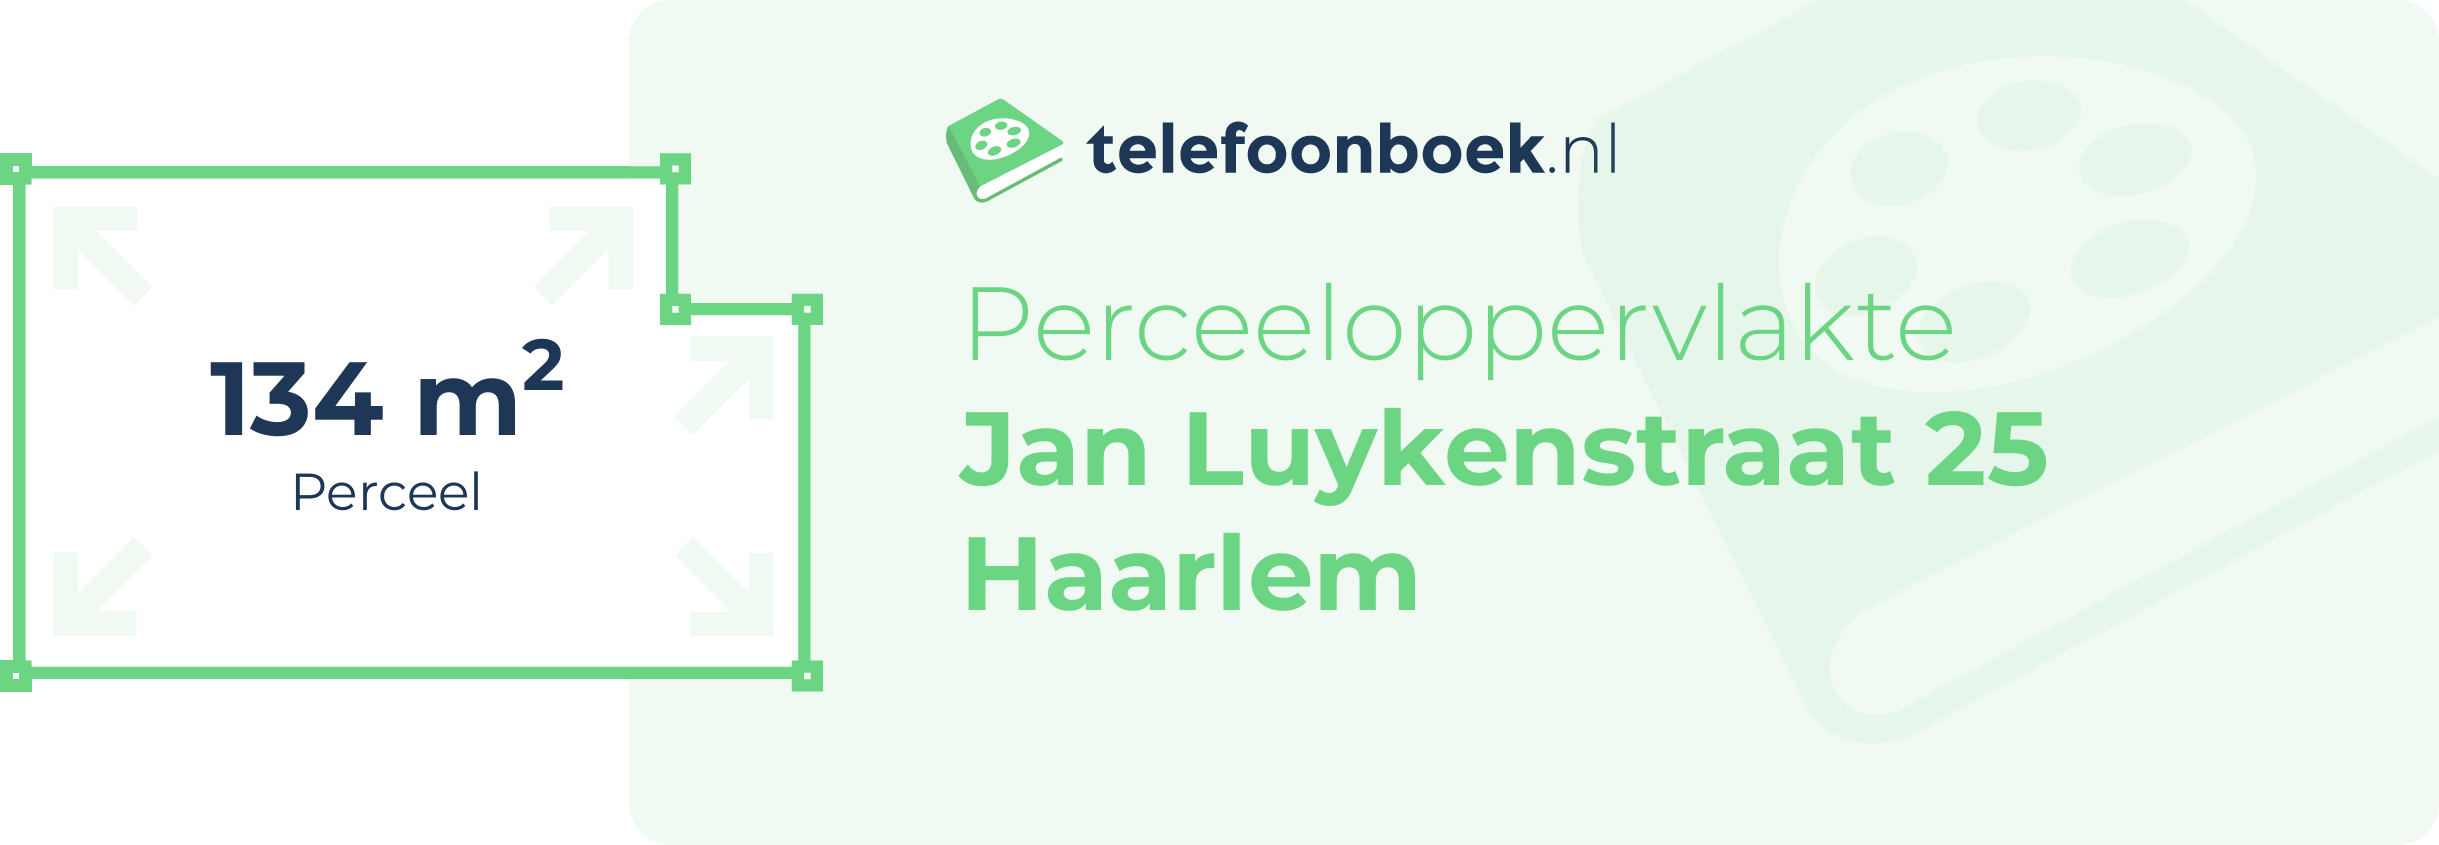 Perceeloppervlakte Jan Luykenstraat 25 Haarlem